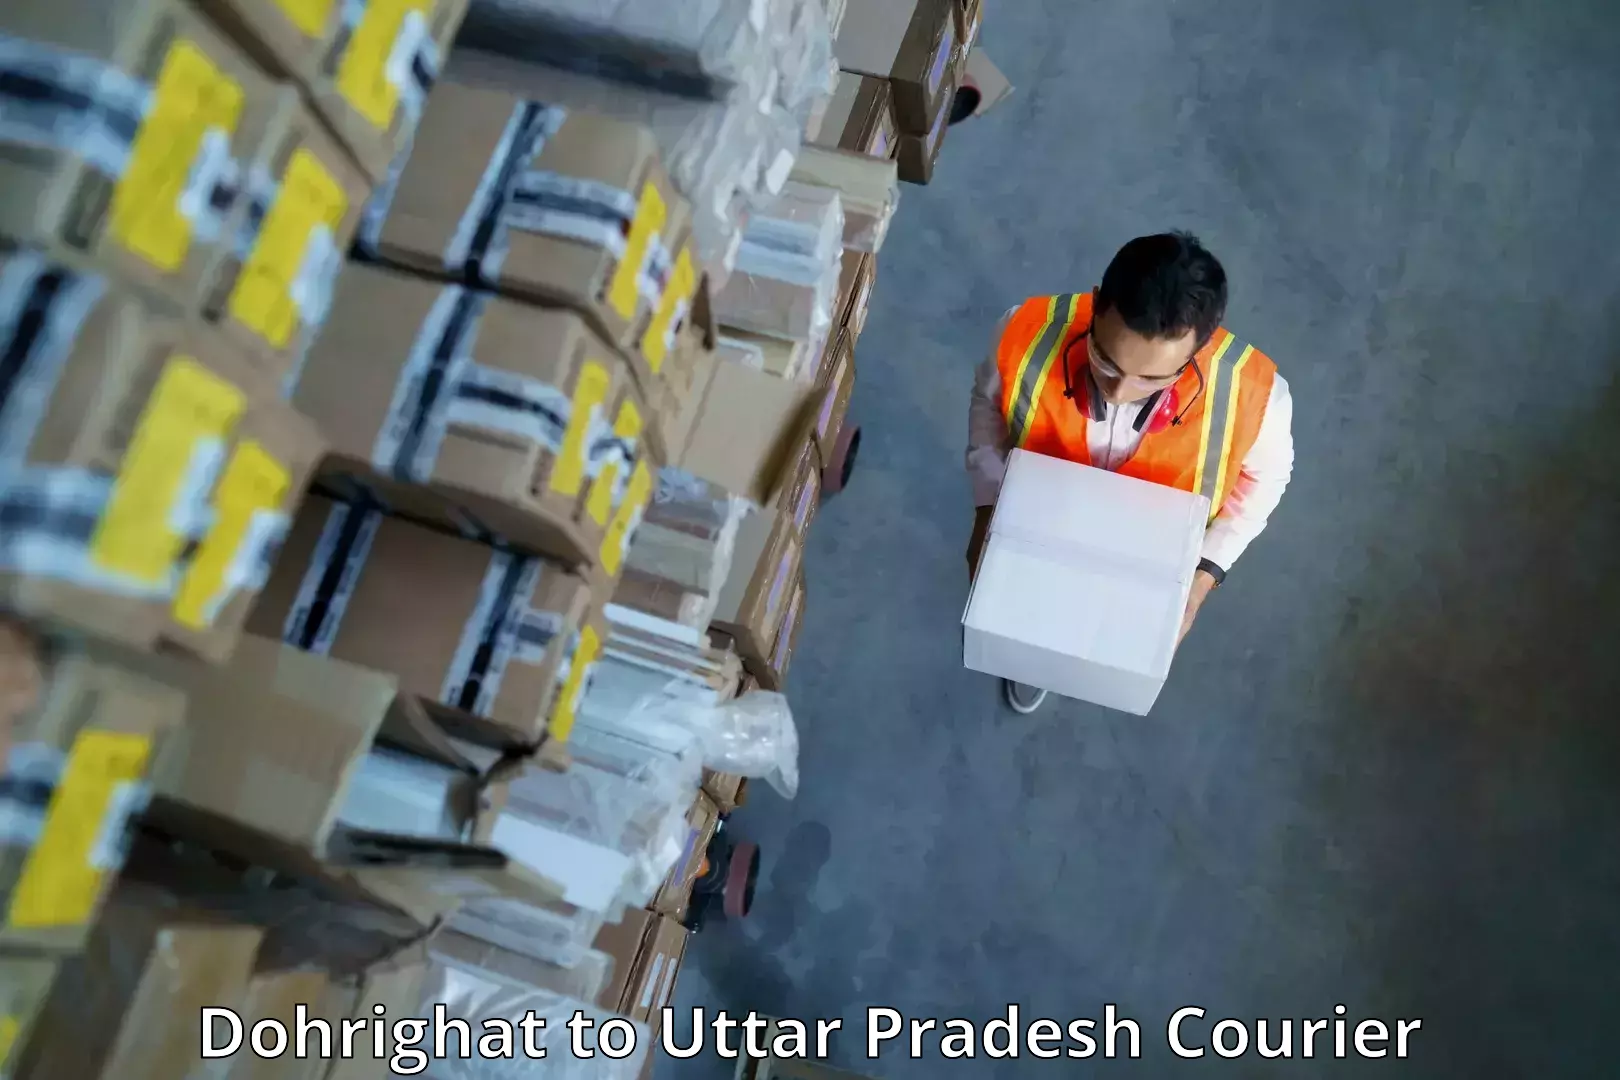 Flexible parcel services Dohrighat to Chandwak